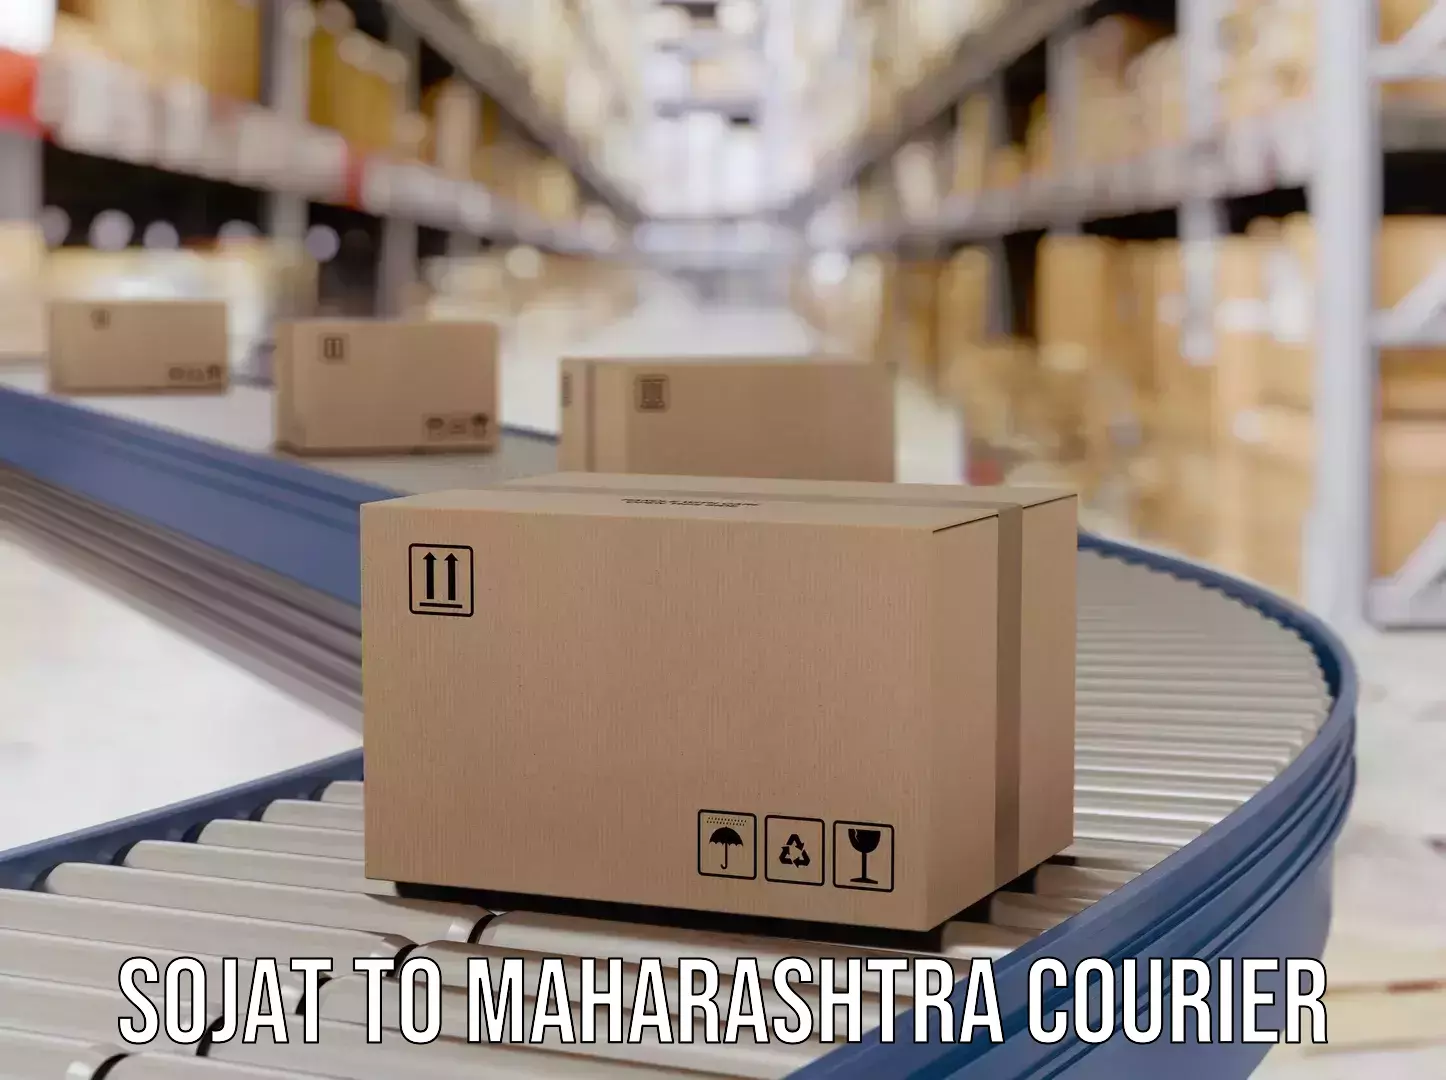 Express logistics providers Sojat to Maharashtra